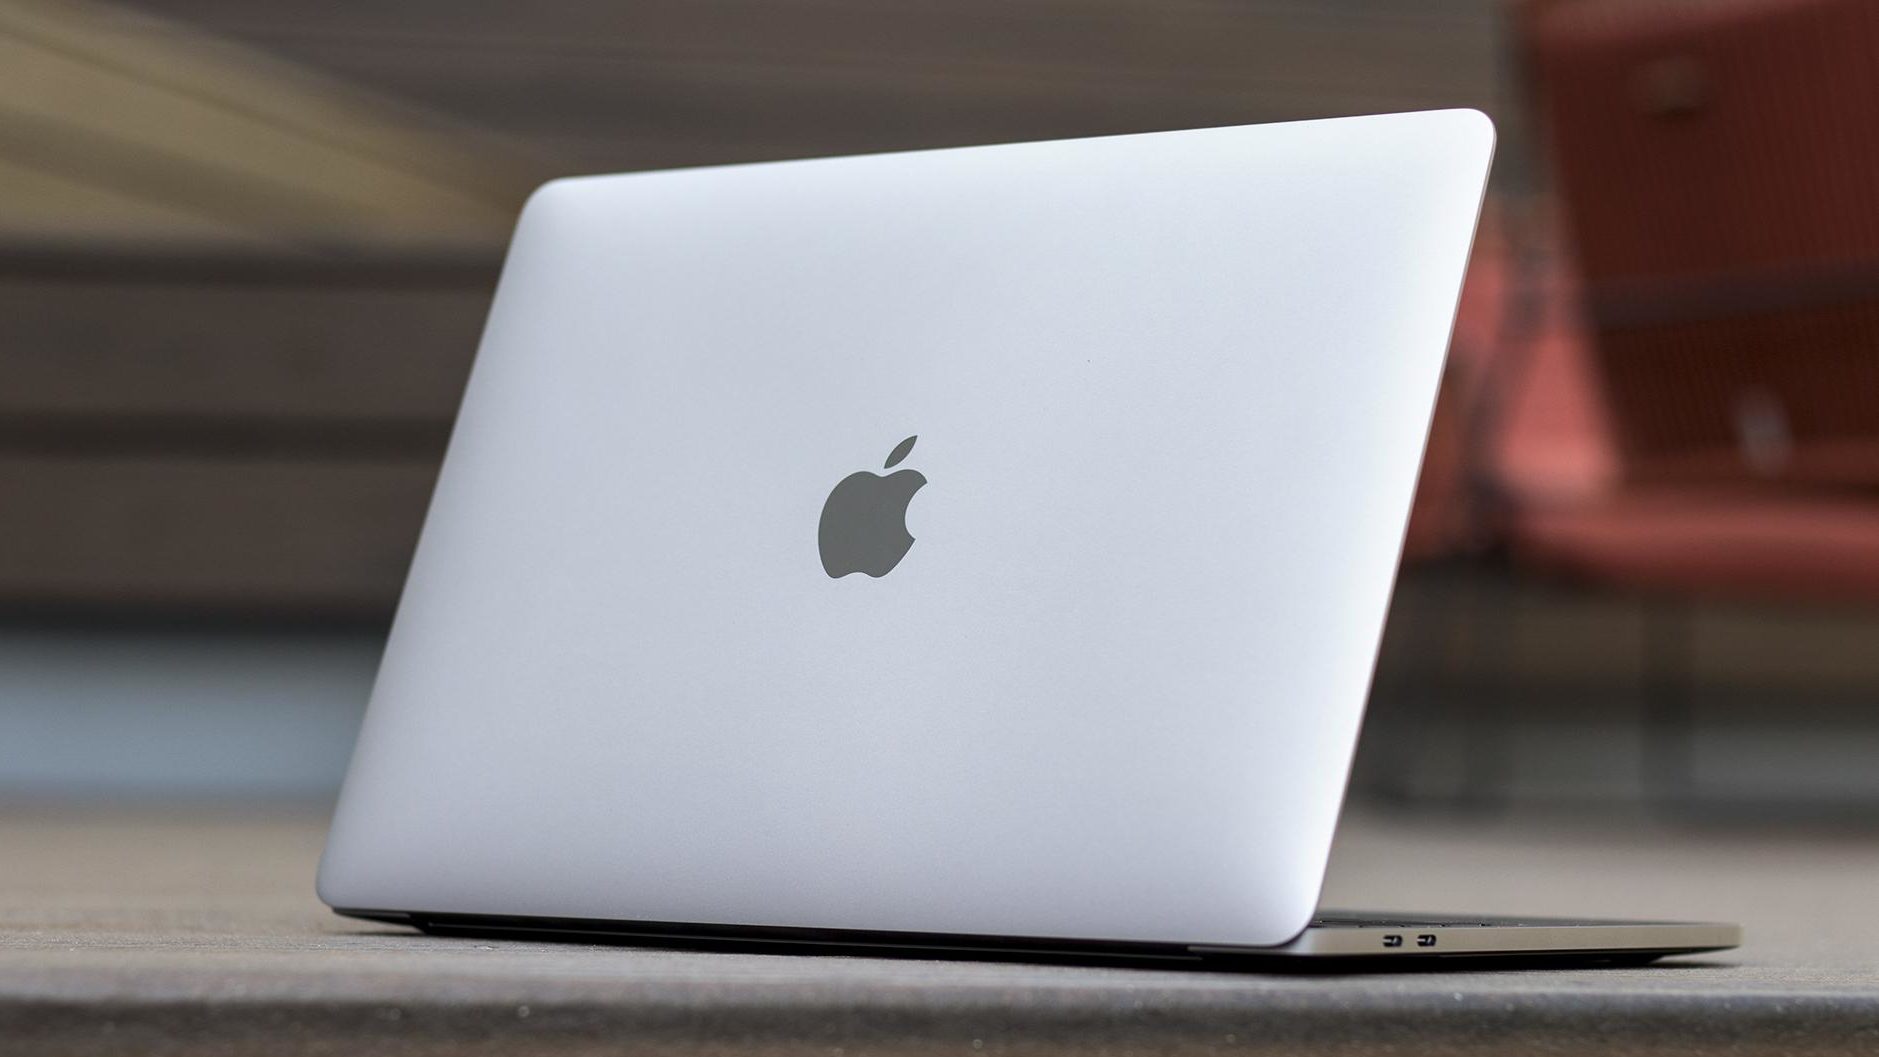 شركة Apple قد تقوم بتأجيل جهاز MacBook الجديد المستند إلى معمارية ARM